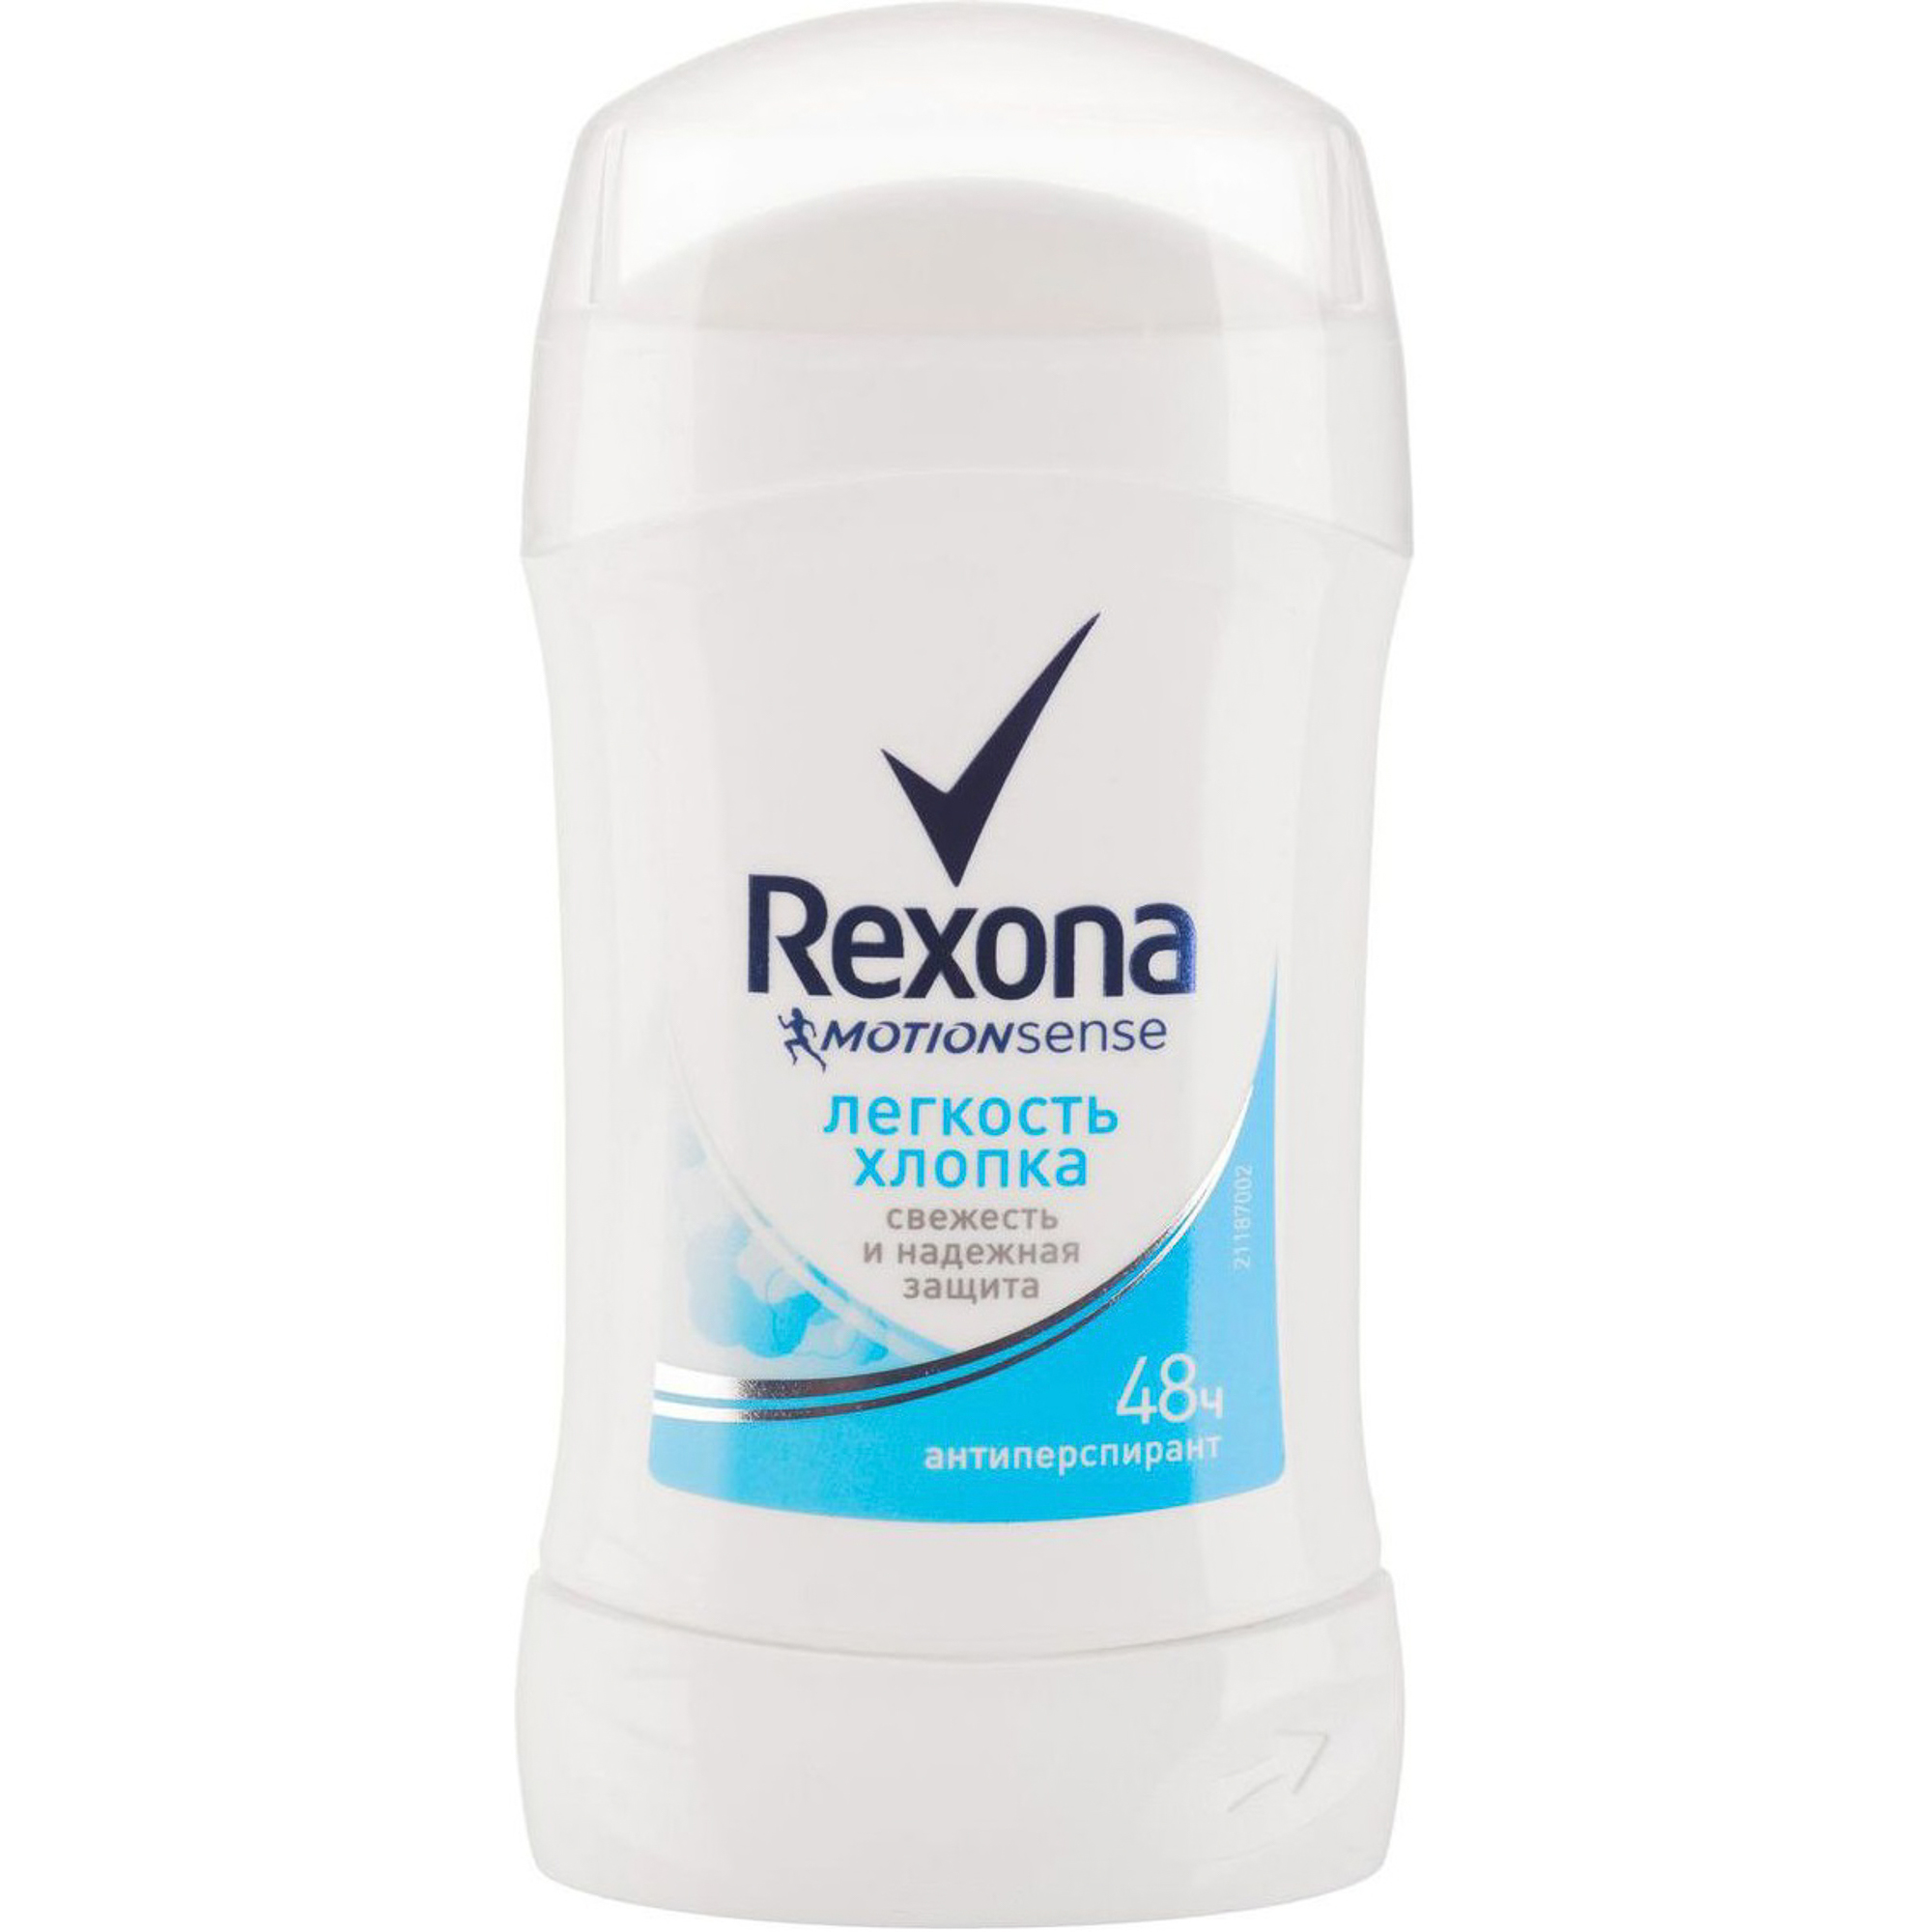 Дезодорант-стик Rexona Свежесть Хлопка 40мл дезодорант стик rexona антибактериальная свежесть 40мл